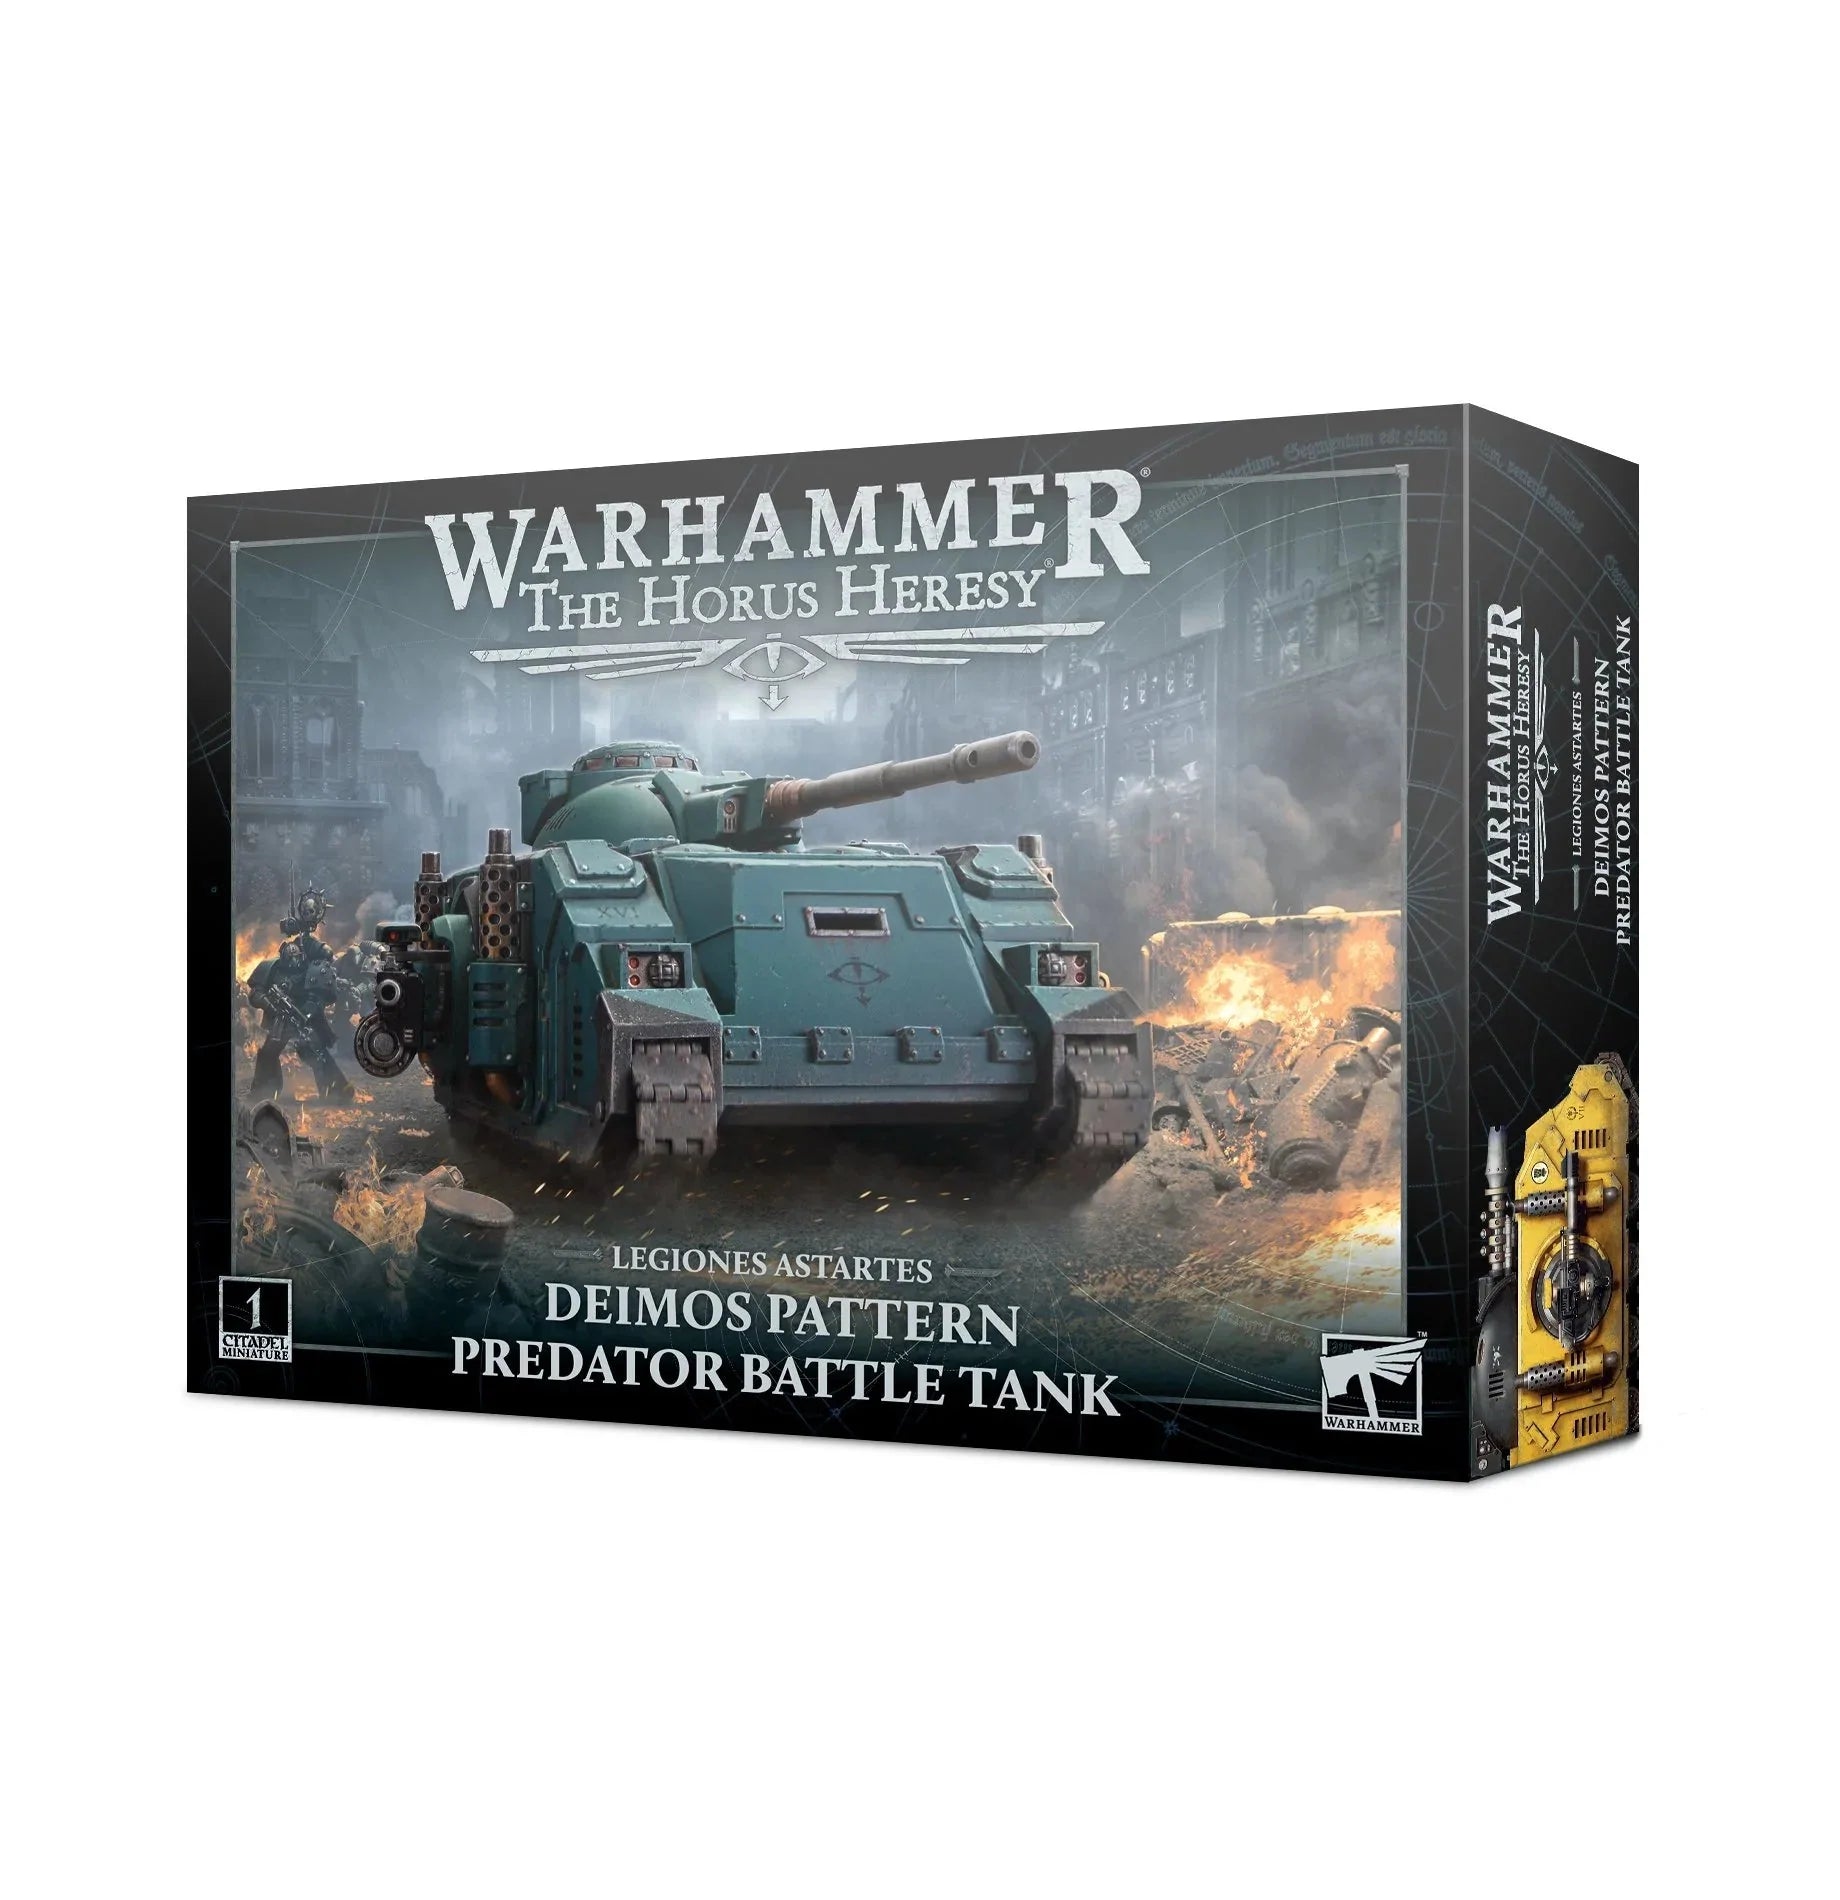 Legiones Astartes: Predator Battle Tank - Warhammer